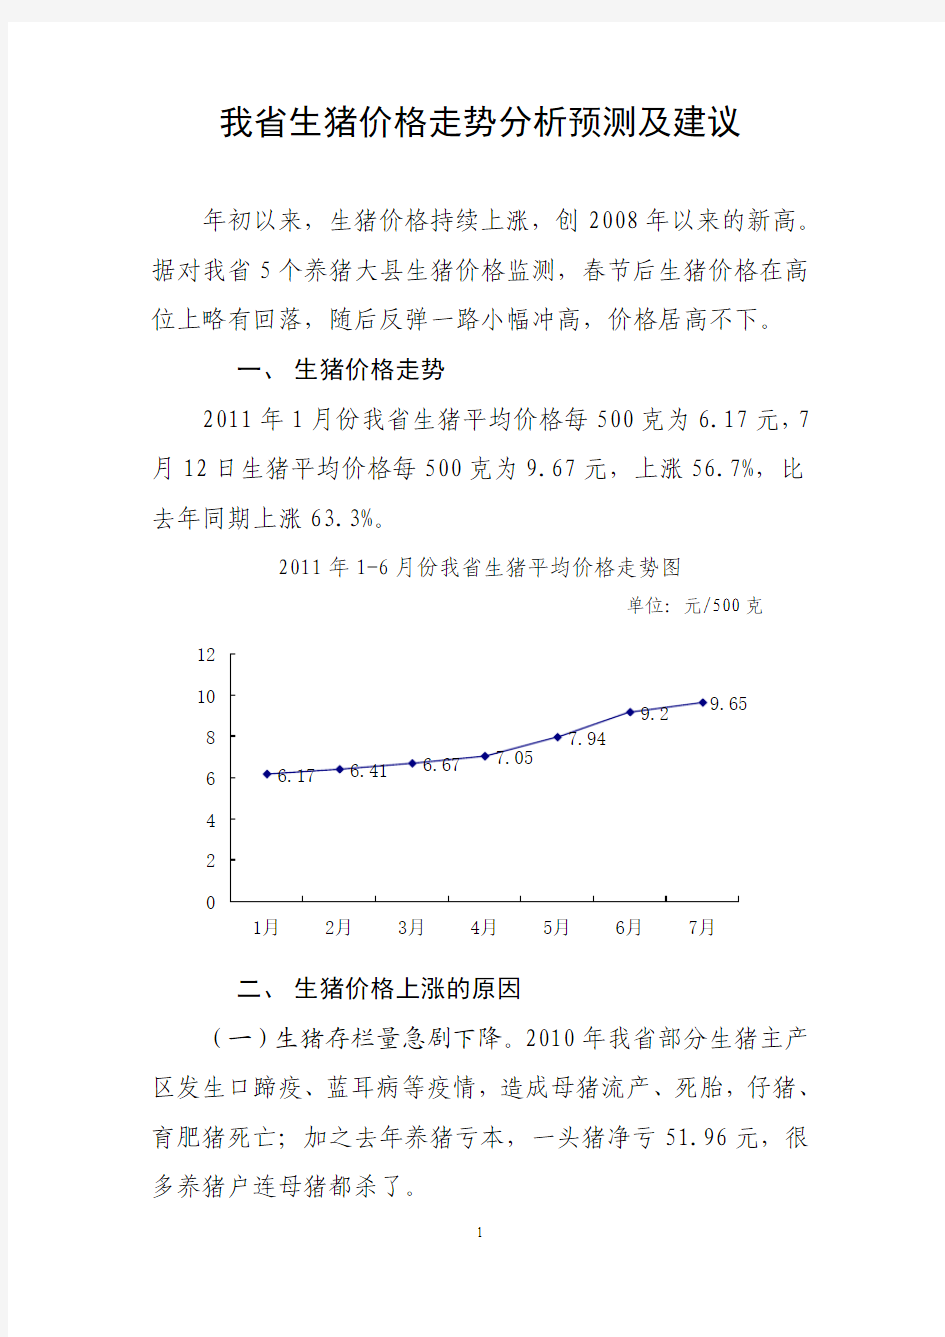 黑龙江省生猪价格走势分析及预测